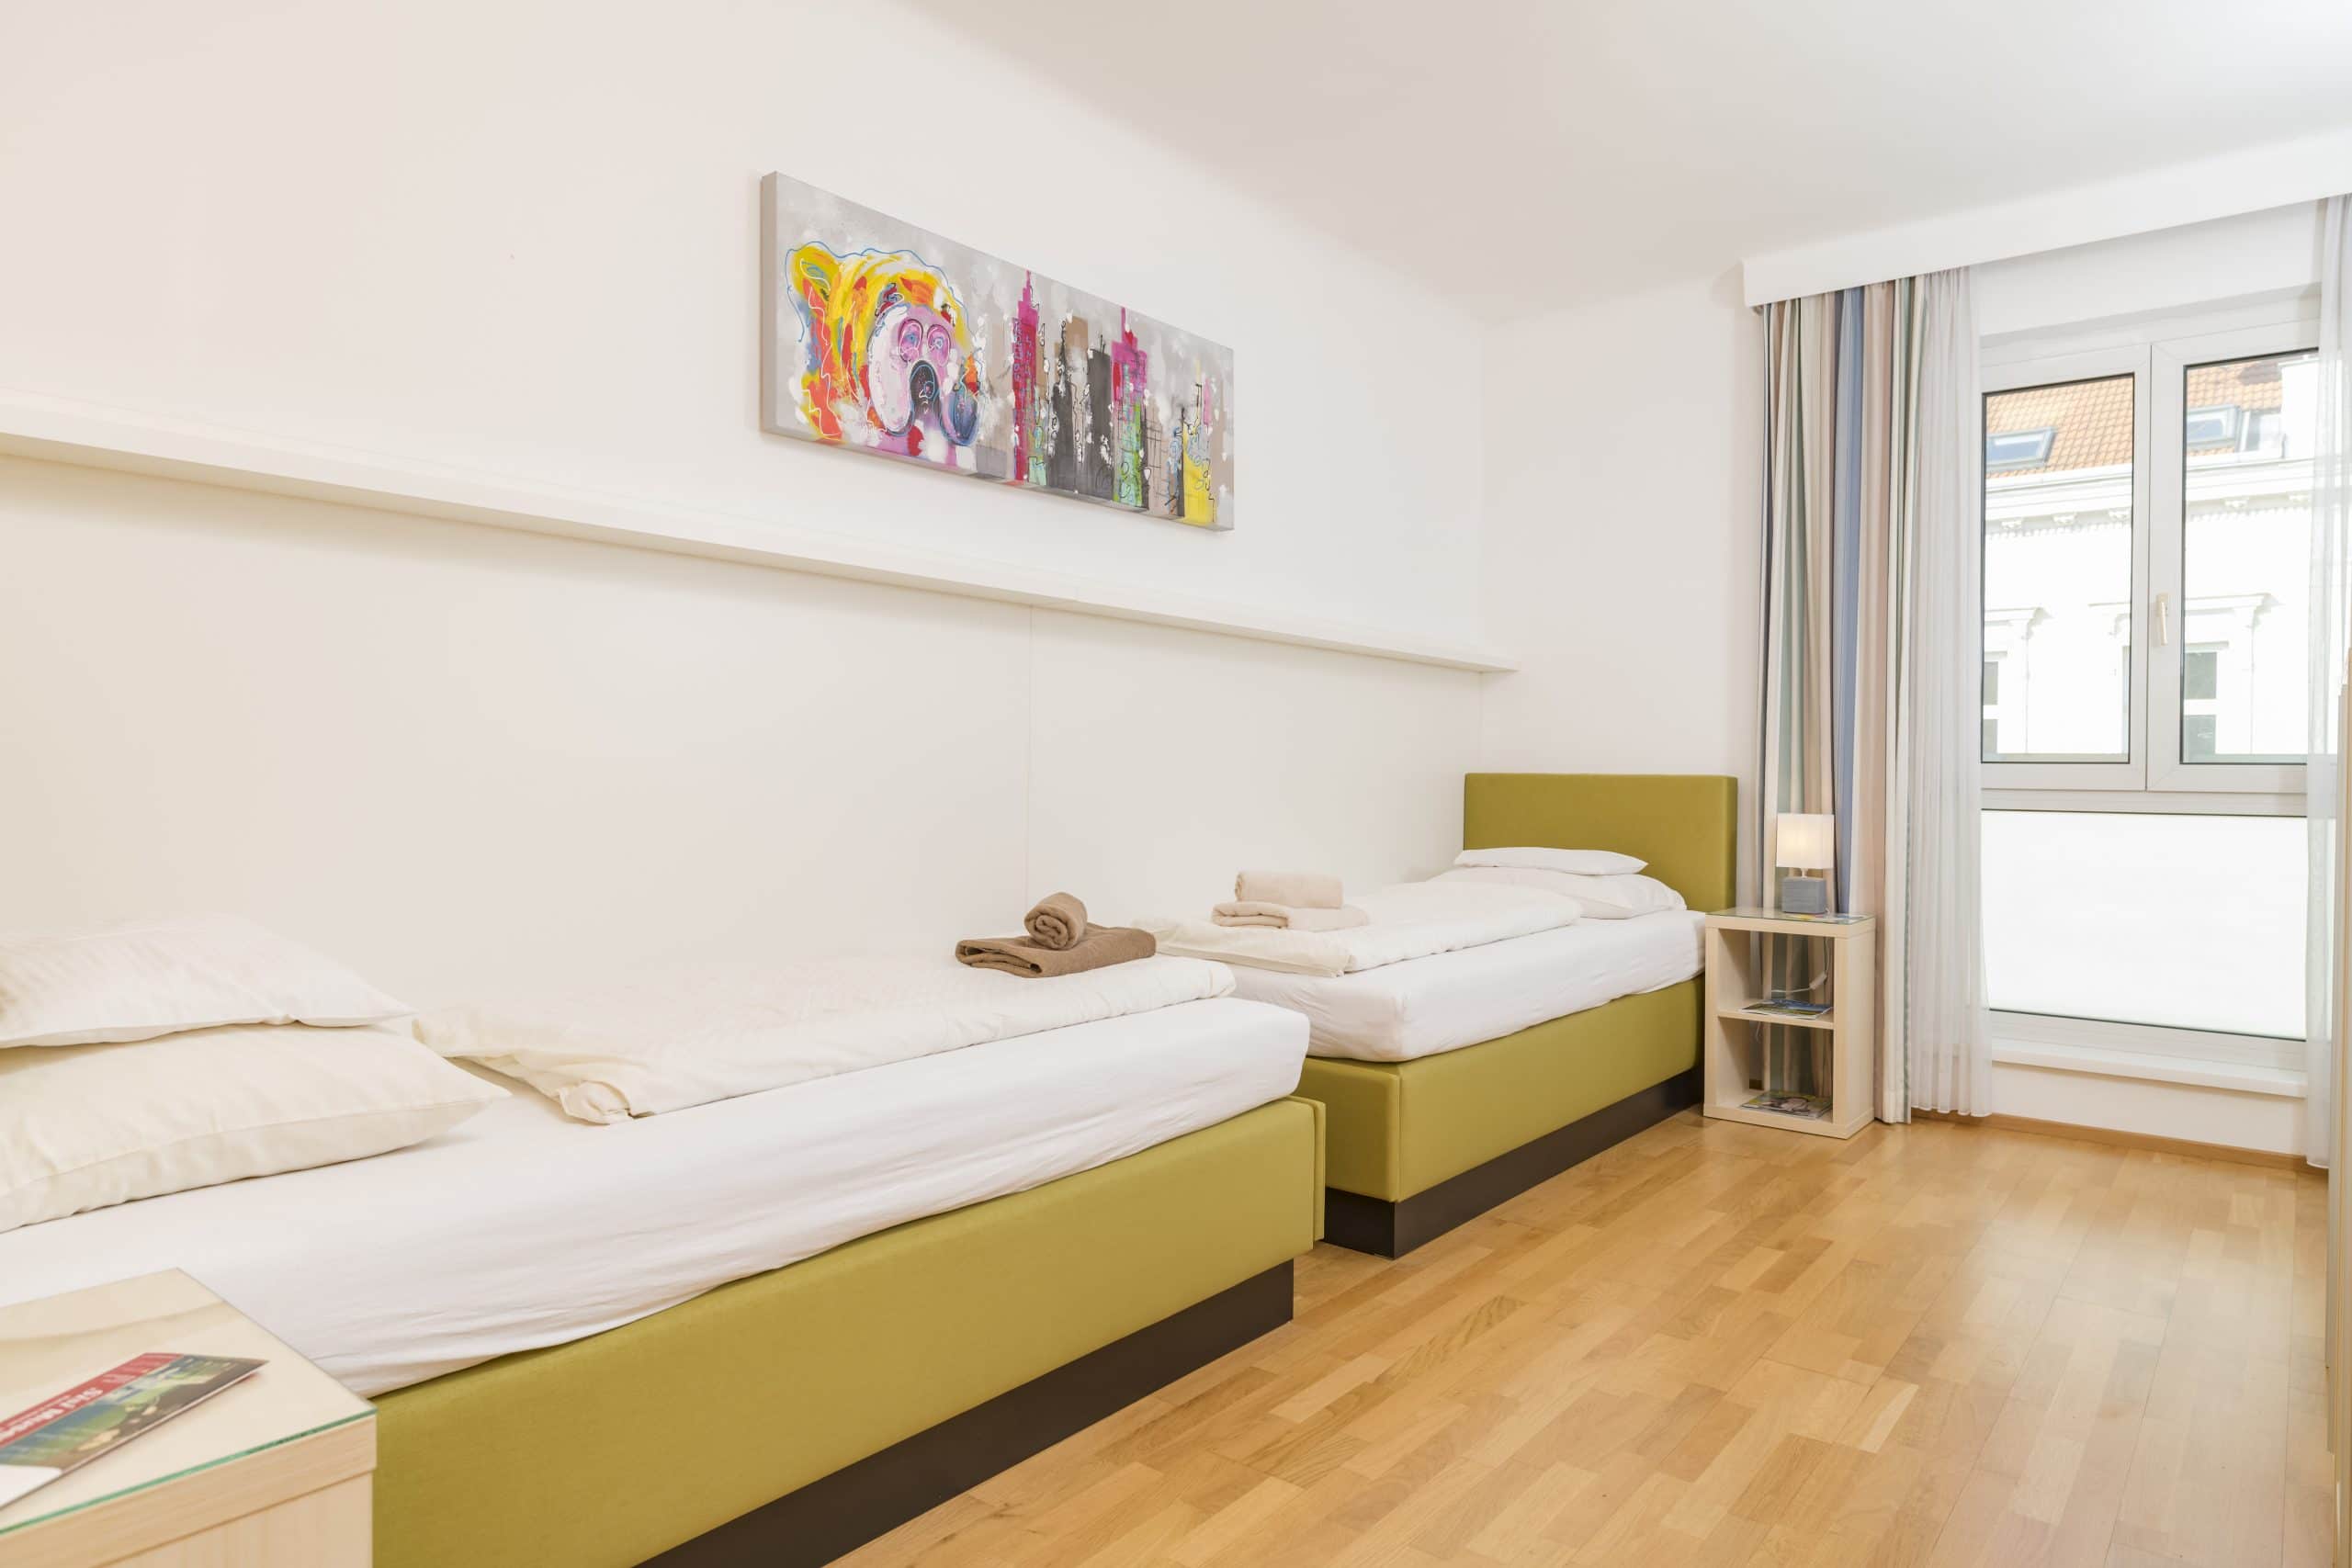 Apartment F21/18 Schlafzimmer mit grünen Betten